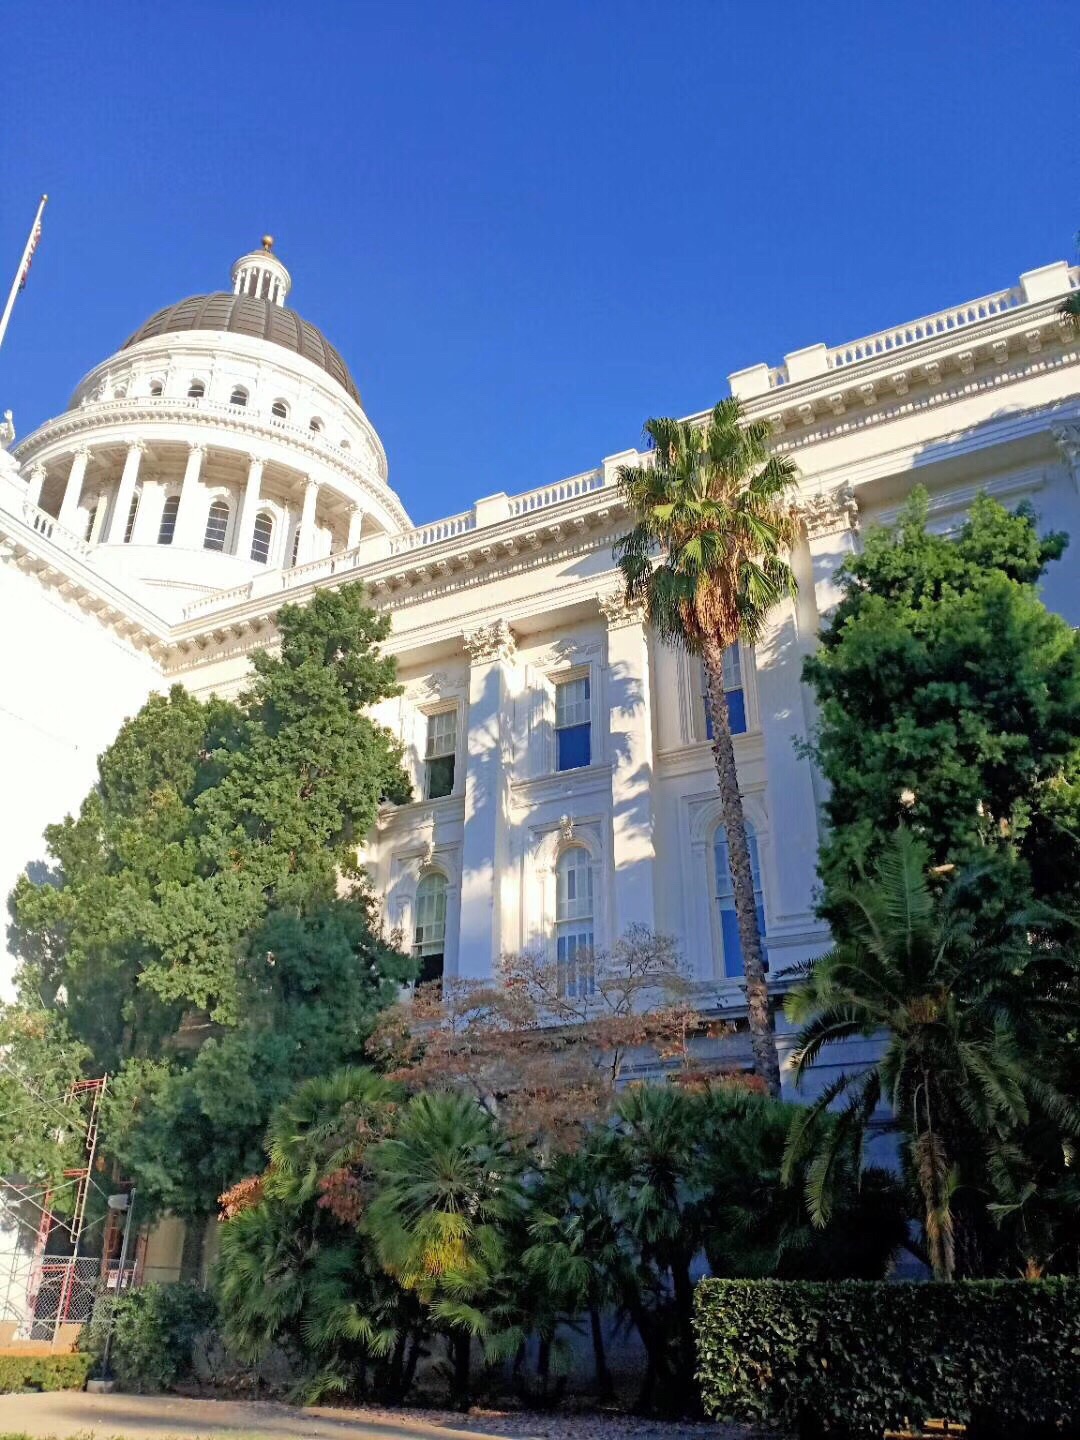 今天去了斯瓦辛格曾经工作过的地方，加州州议会大楼参观。议会大楼特色是以现代科技重现了古典的风格。 加